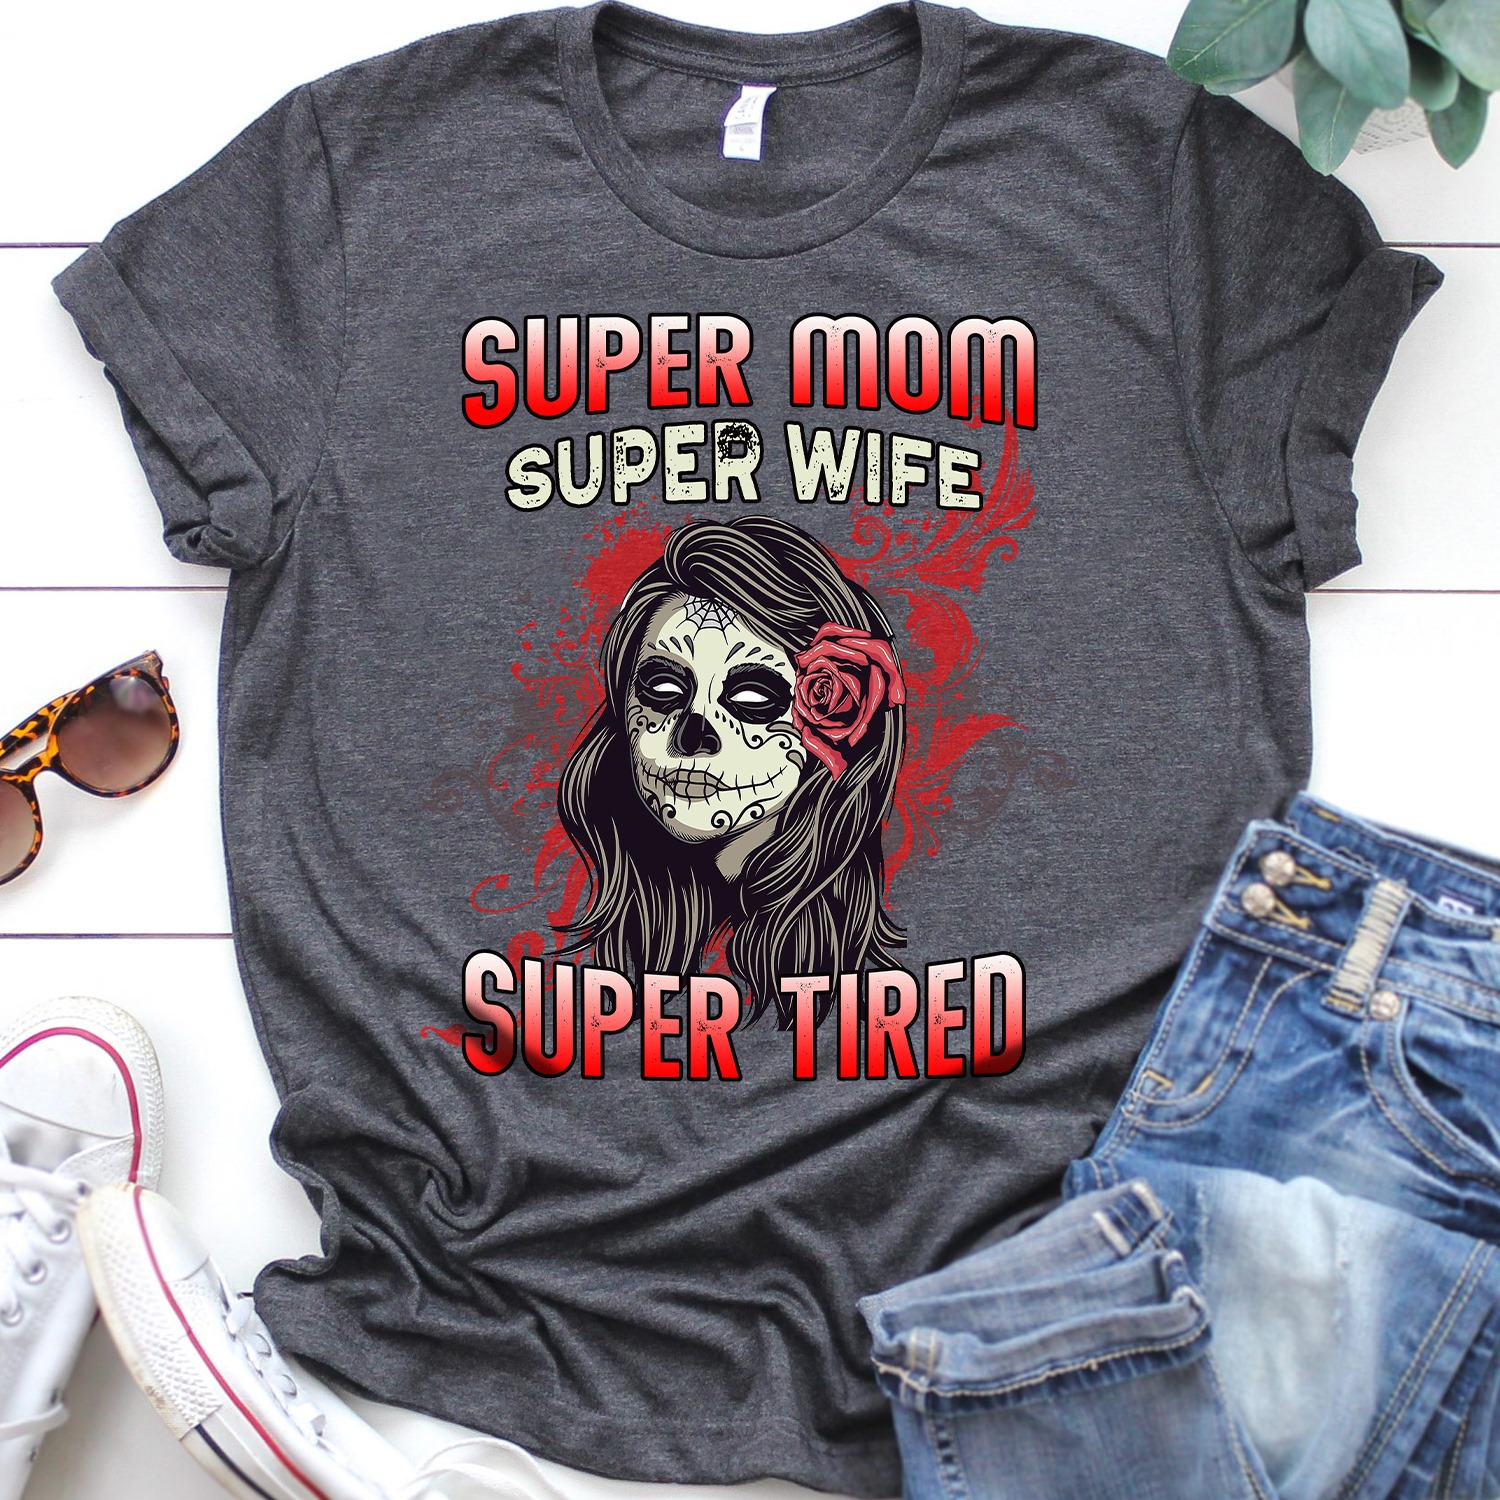 Super mom super wife super tired